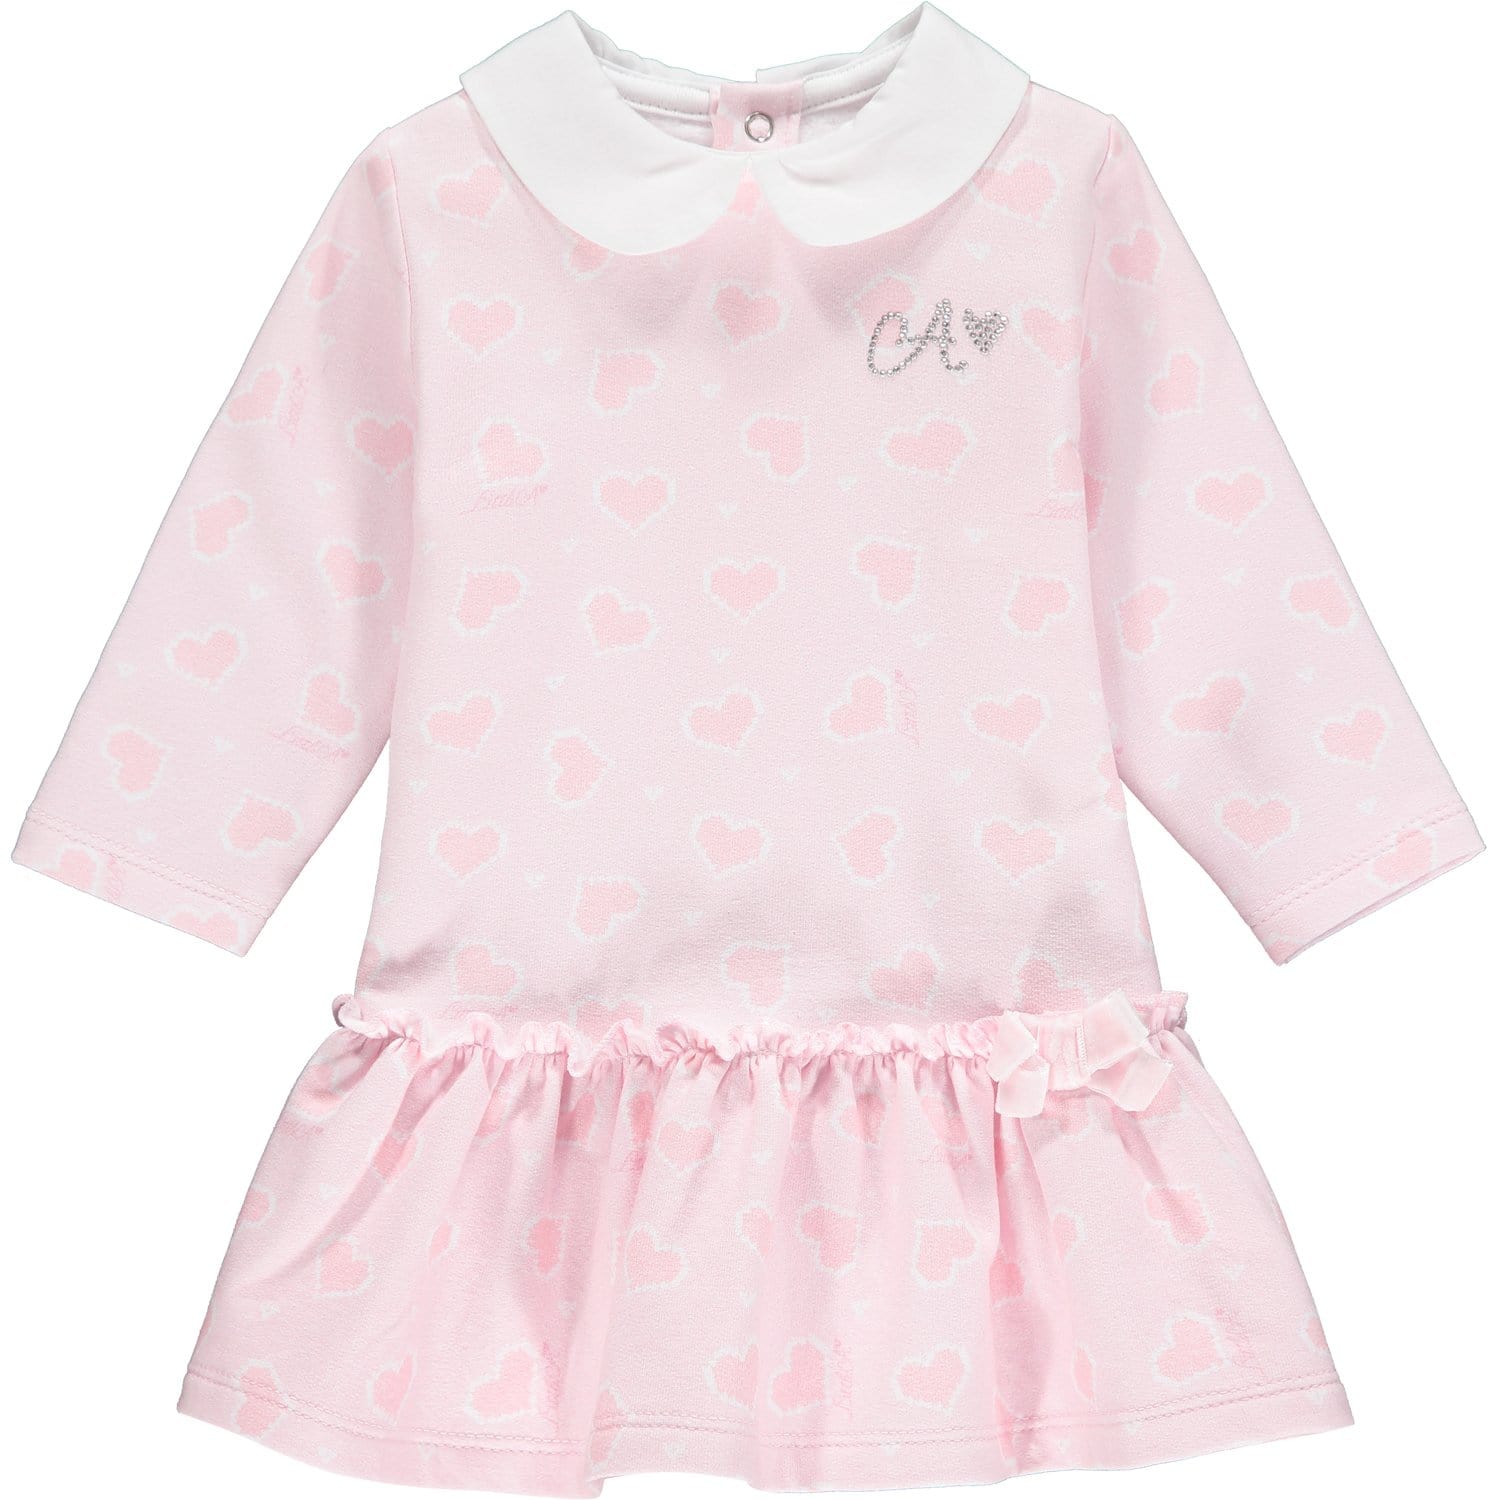 LITTLE A -  Heart Print Dress - Pink